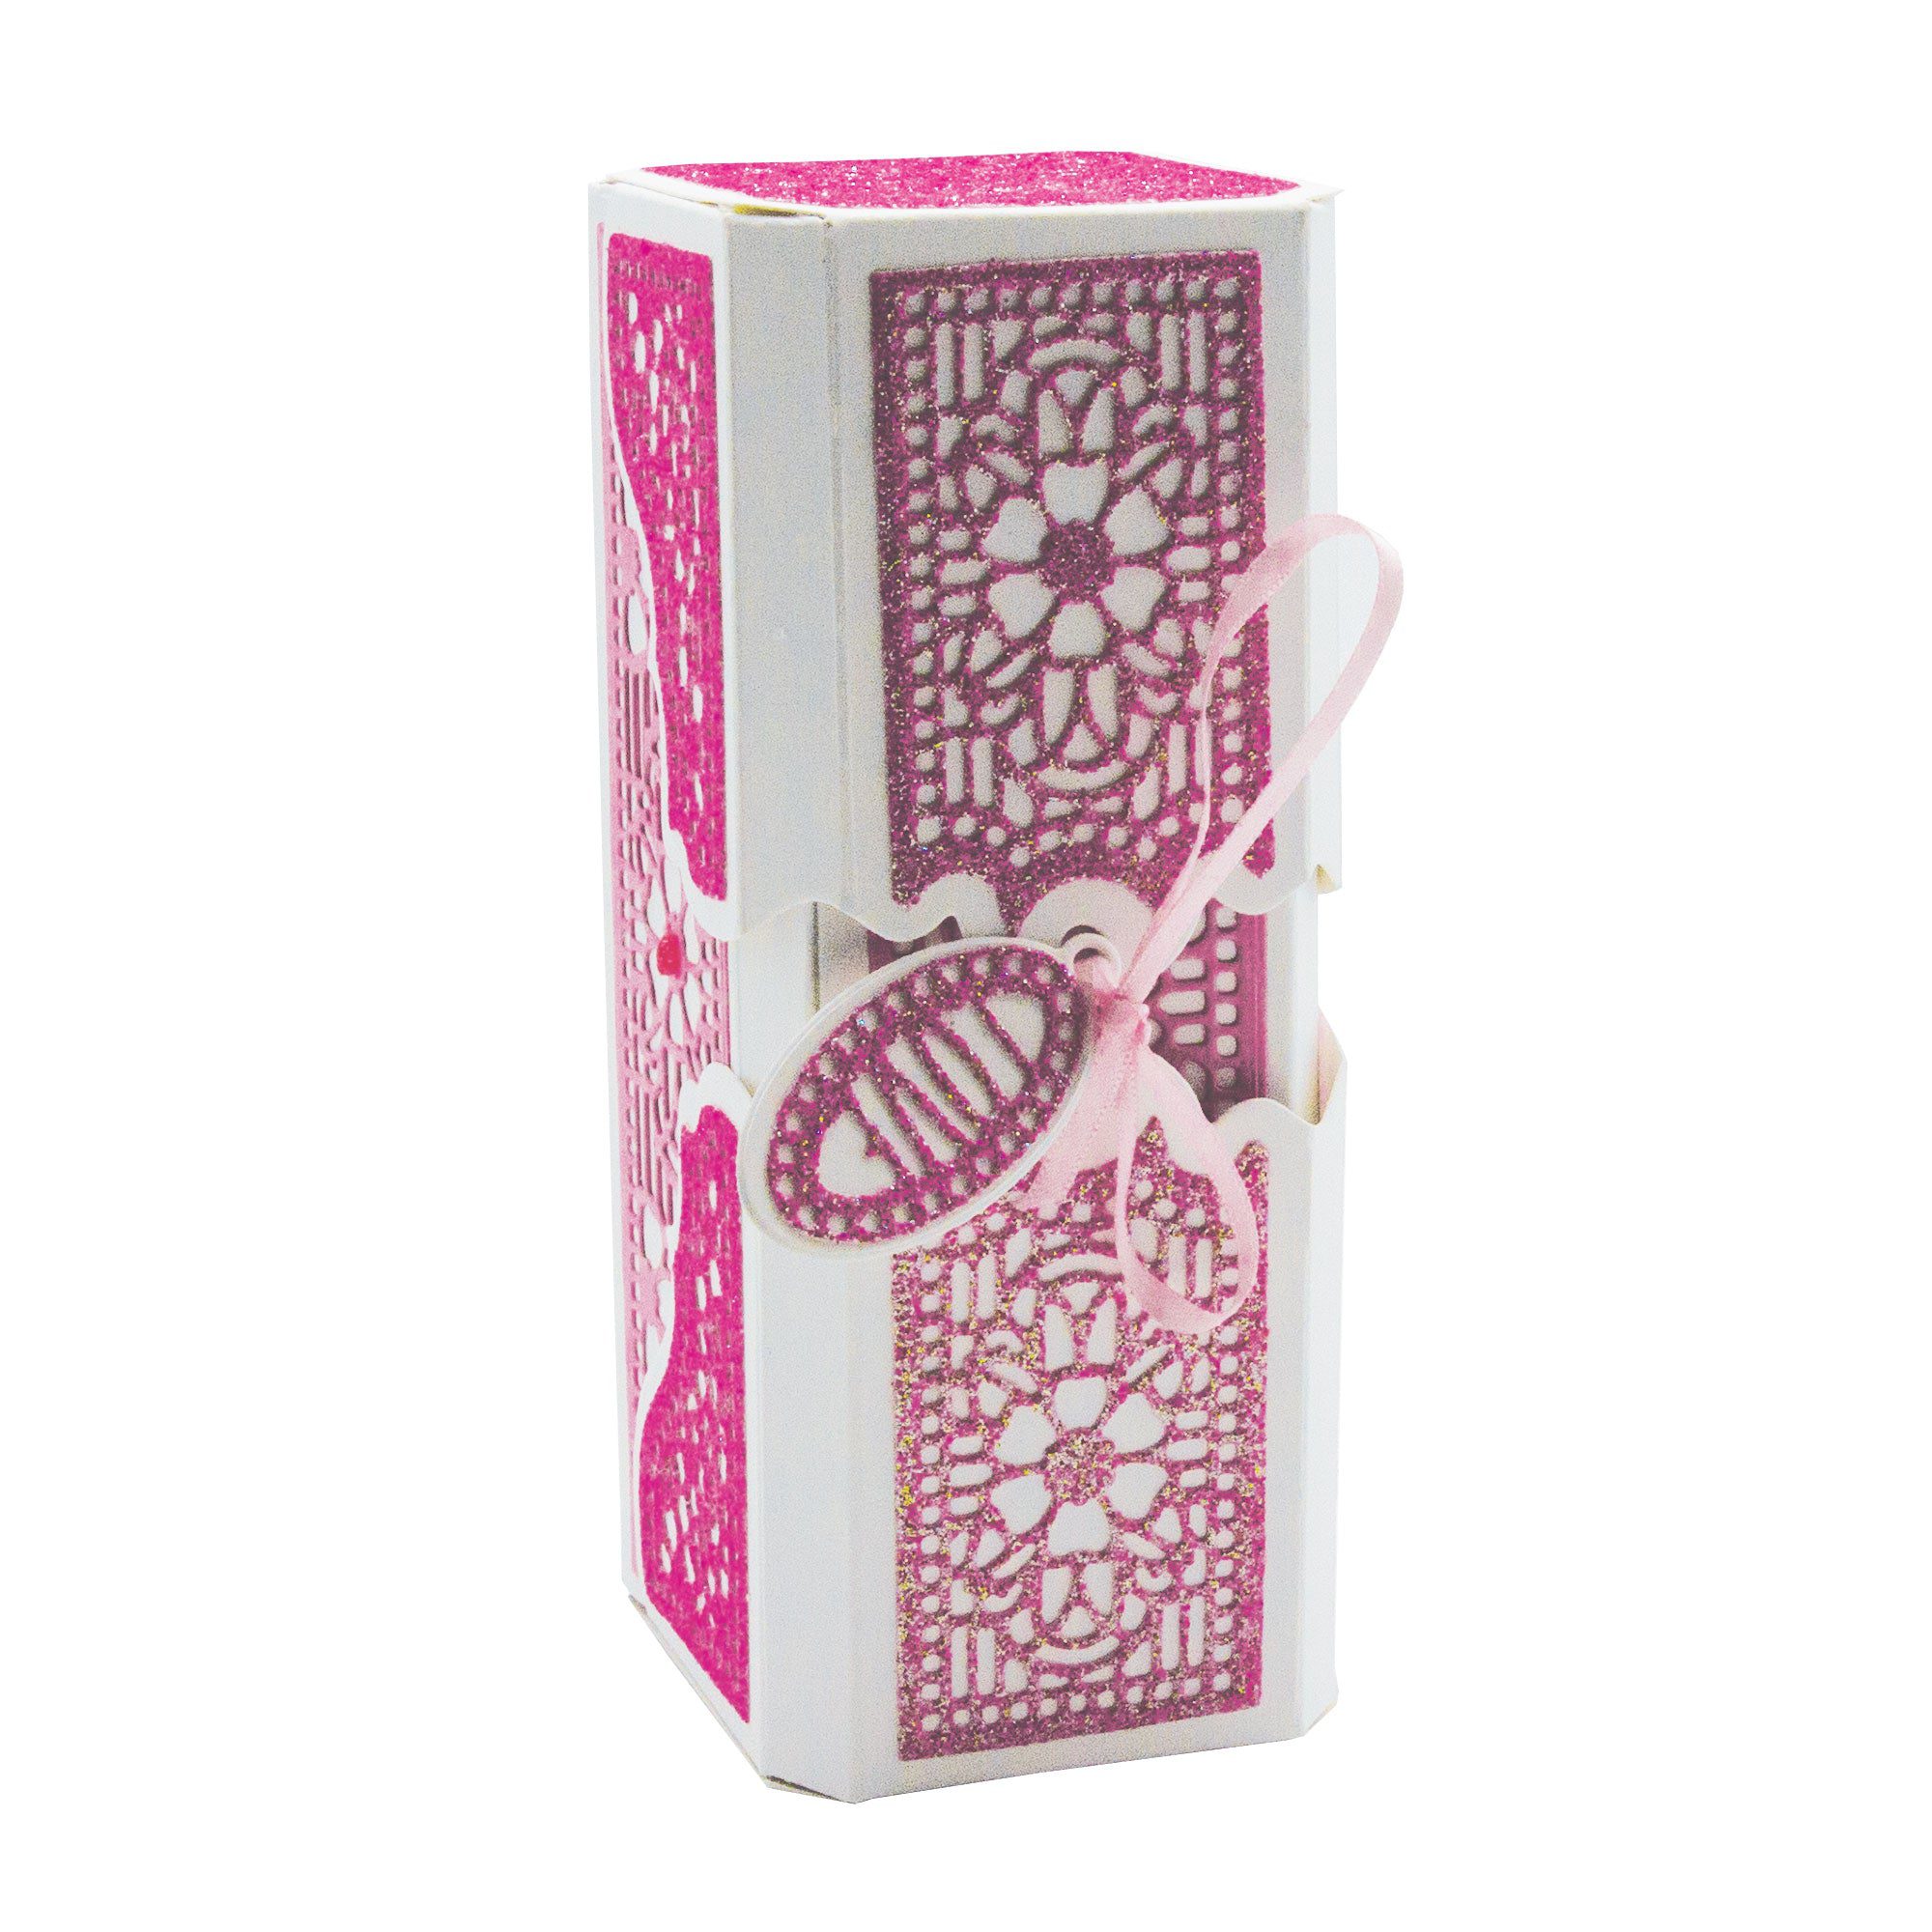 Buy Jumbo Tissue Flower Craft Kit (Pack of 84) at S&S Worldwide